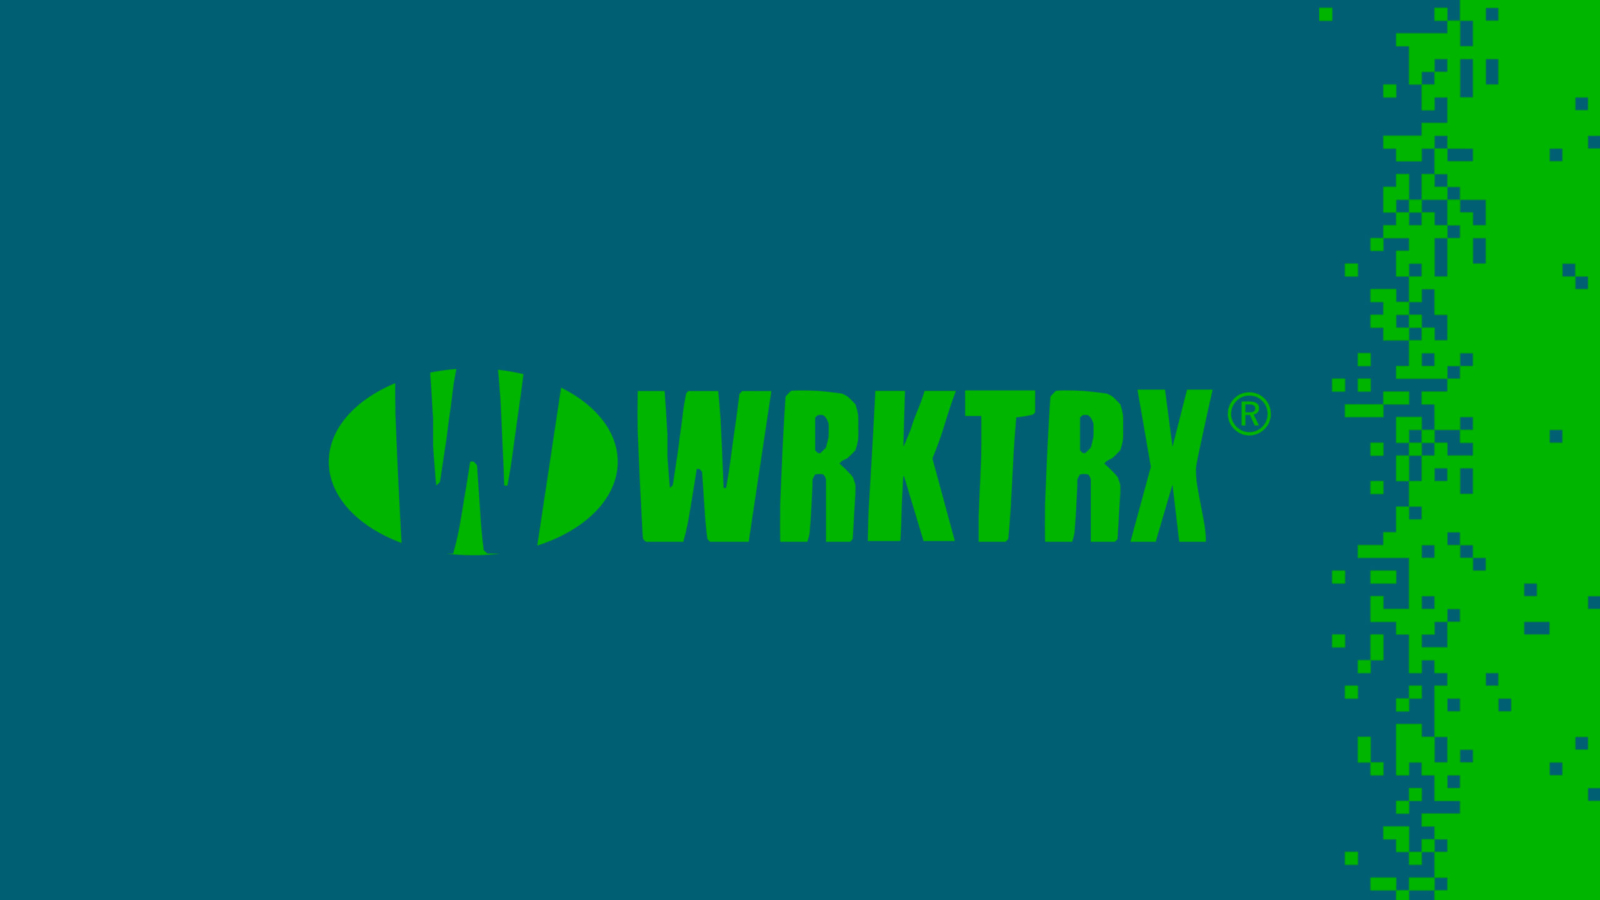 PACK SHOT Truncate - WRKTRX007 (incl. Ben Sims, Manao & Elektor remixes) - WRKTRX